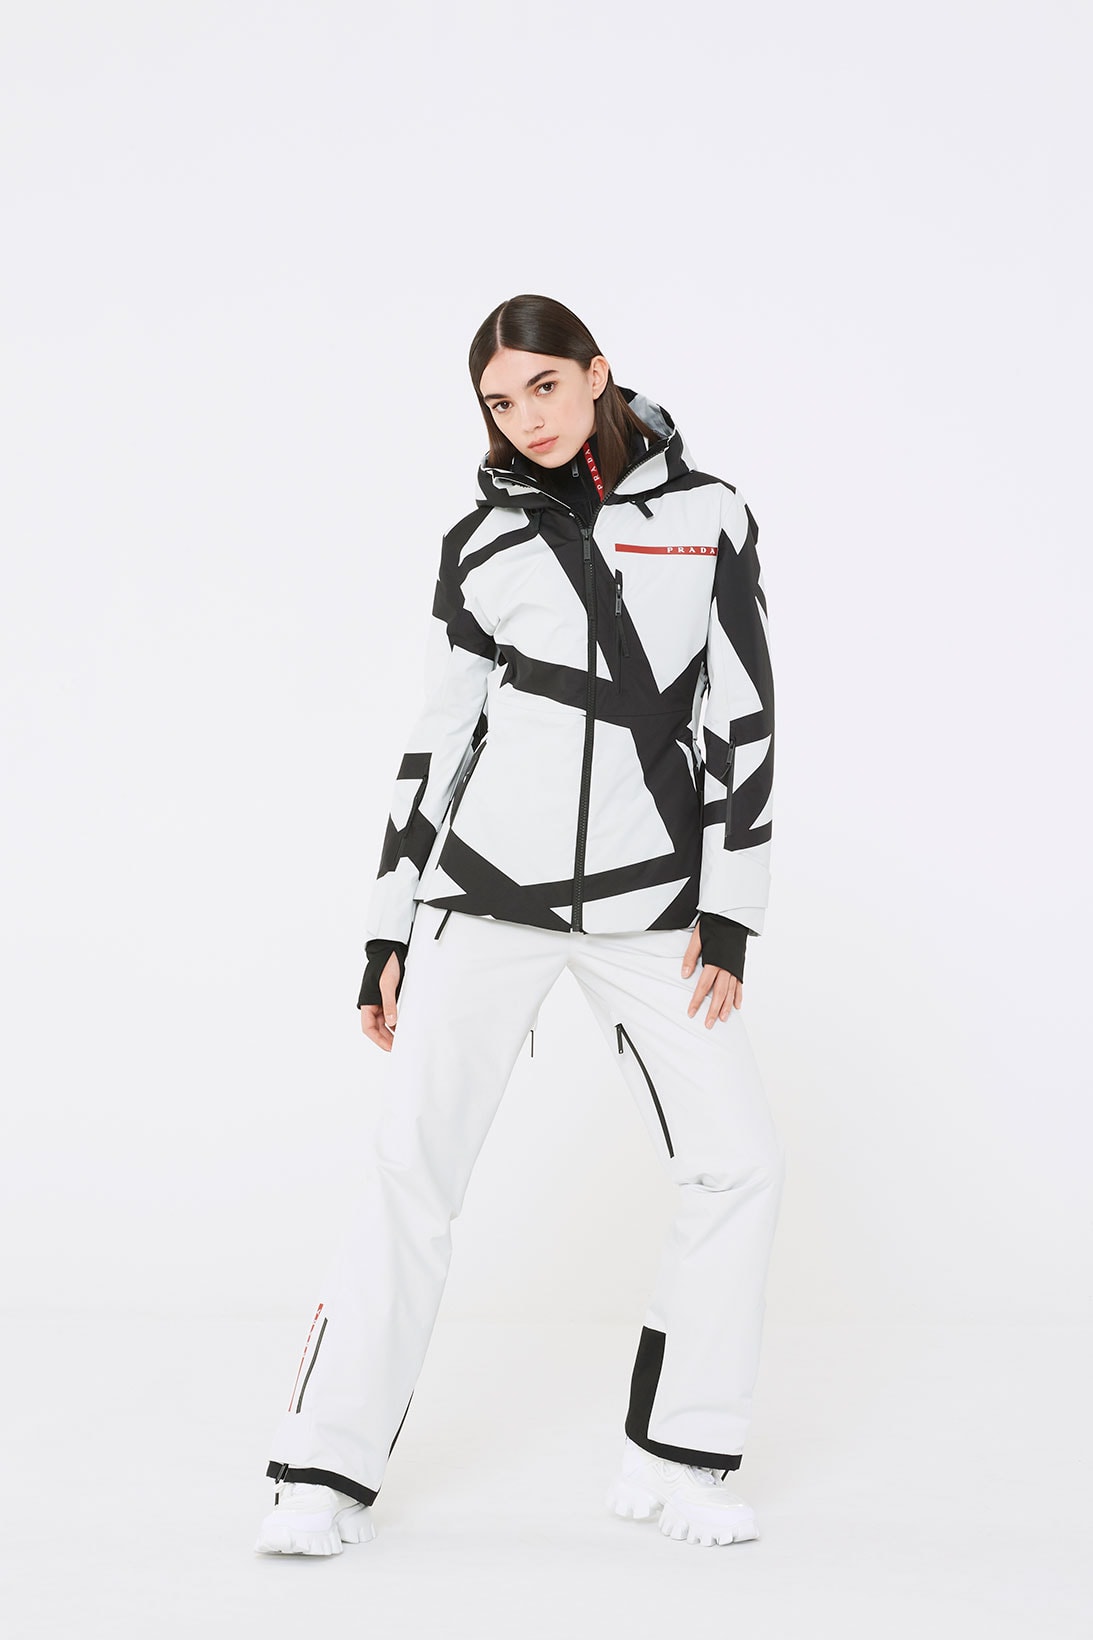 Women's Linea Rossa Ski Wear and Technical Gear